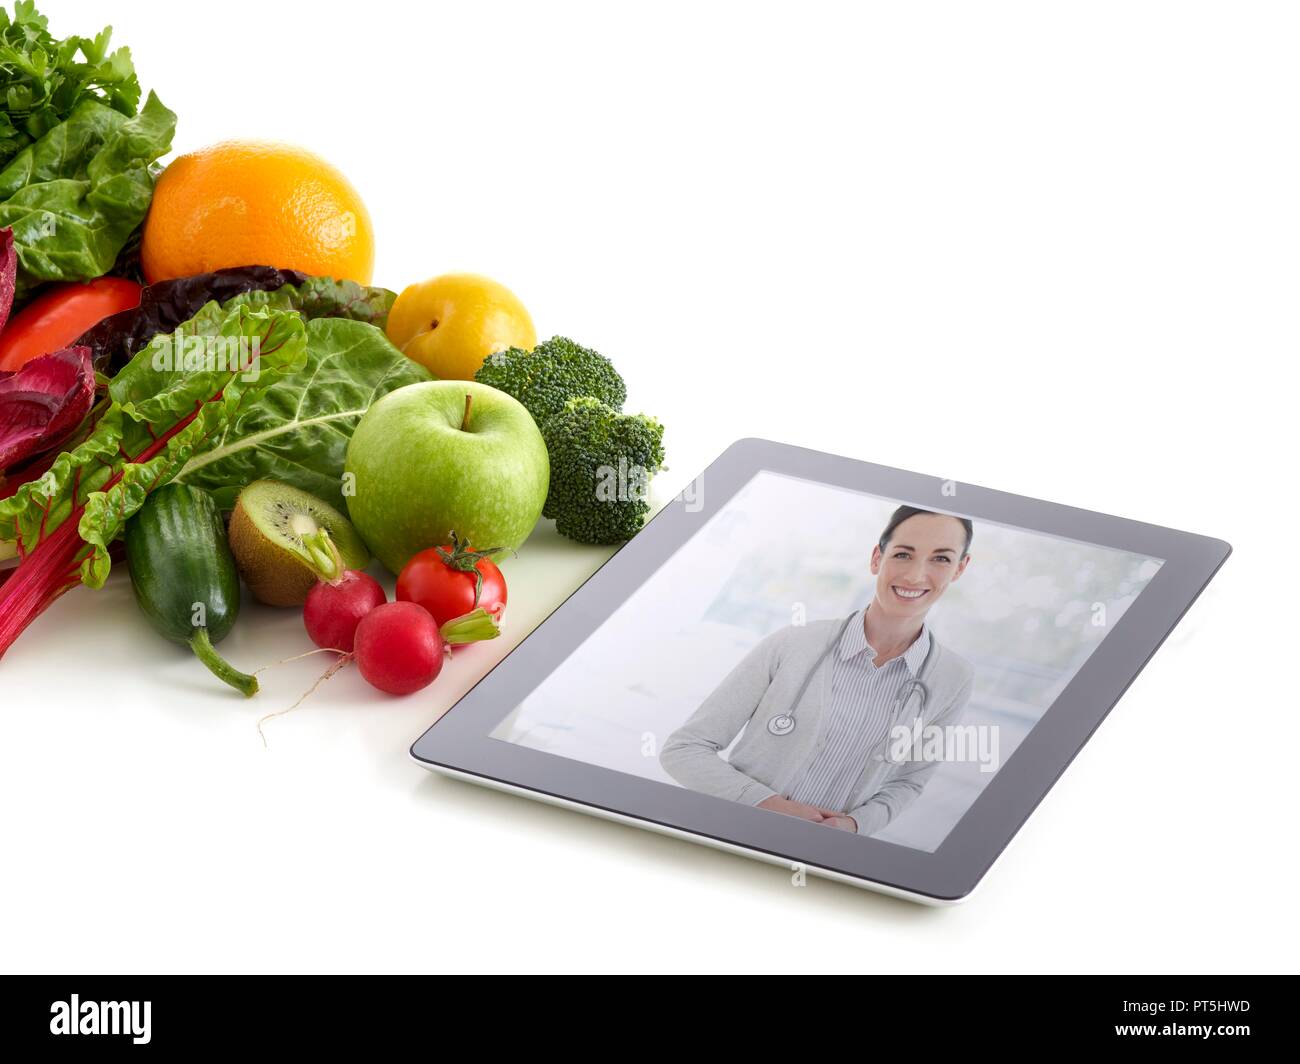 Frutta fresca e verdure con il medico su immagine digitale compressa, studio shot. Foto Stock